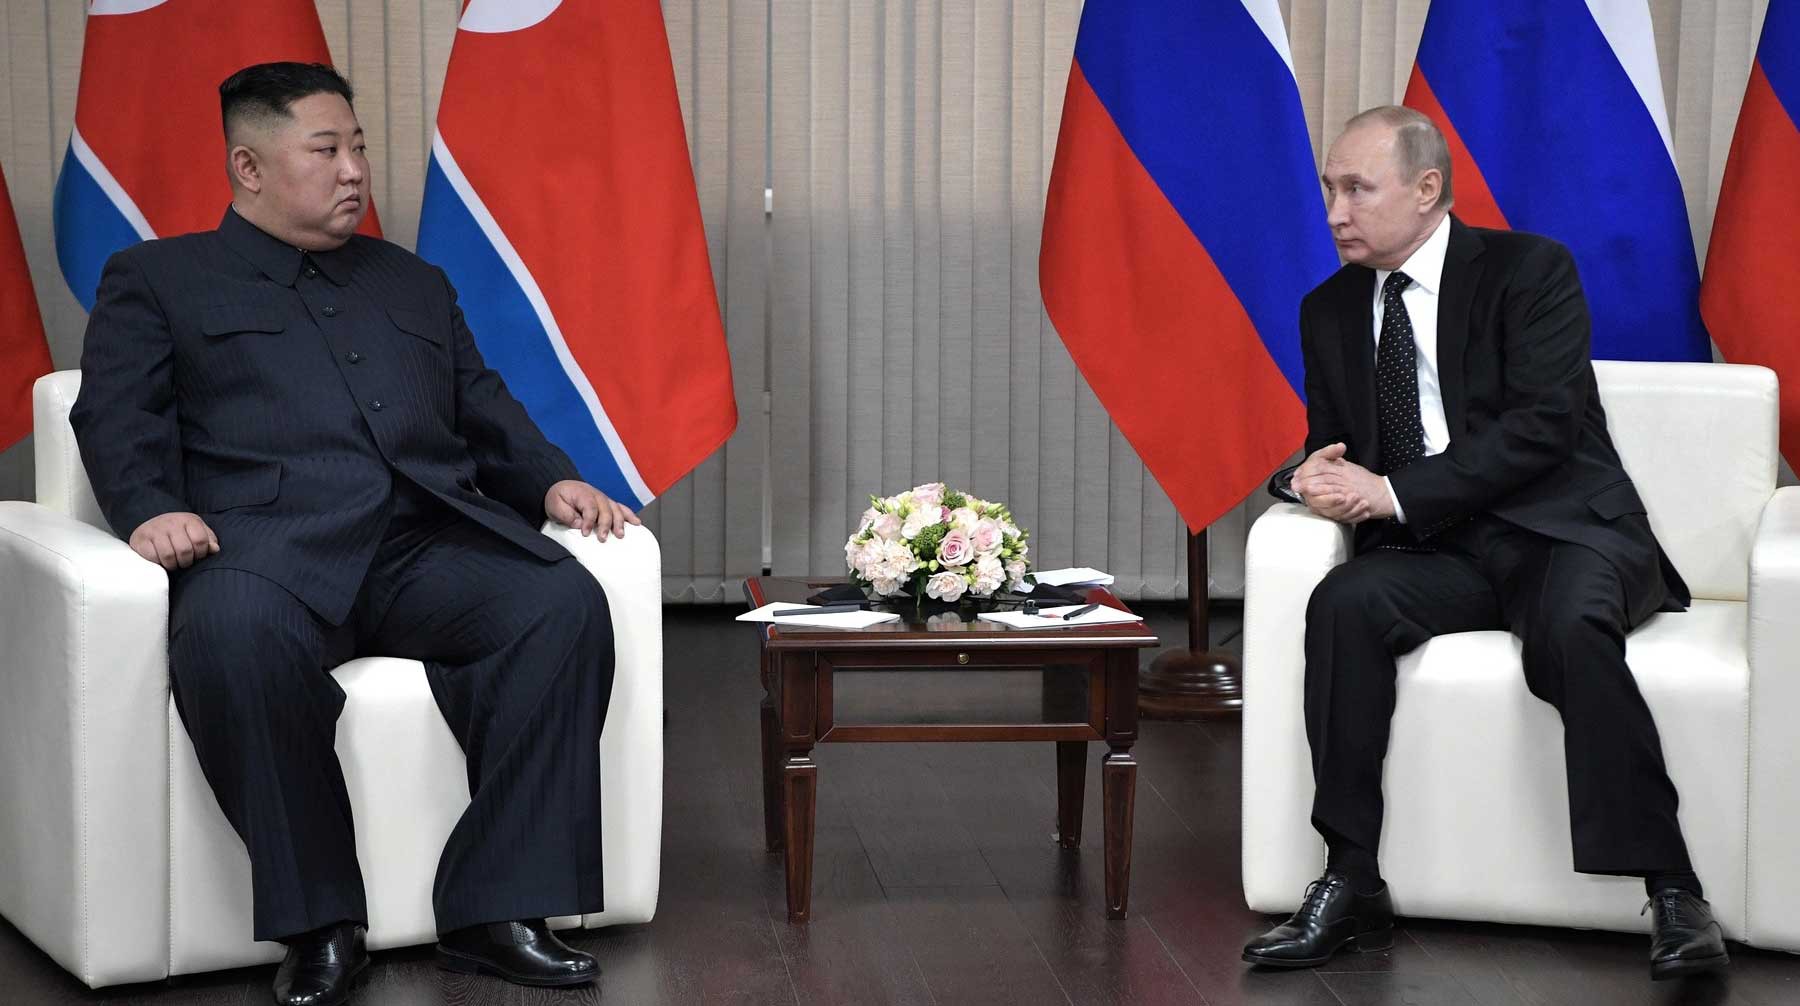 Dailystorm - Во Владивостоке началась встреча Путина и Ким Чен Ына